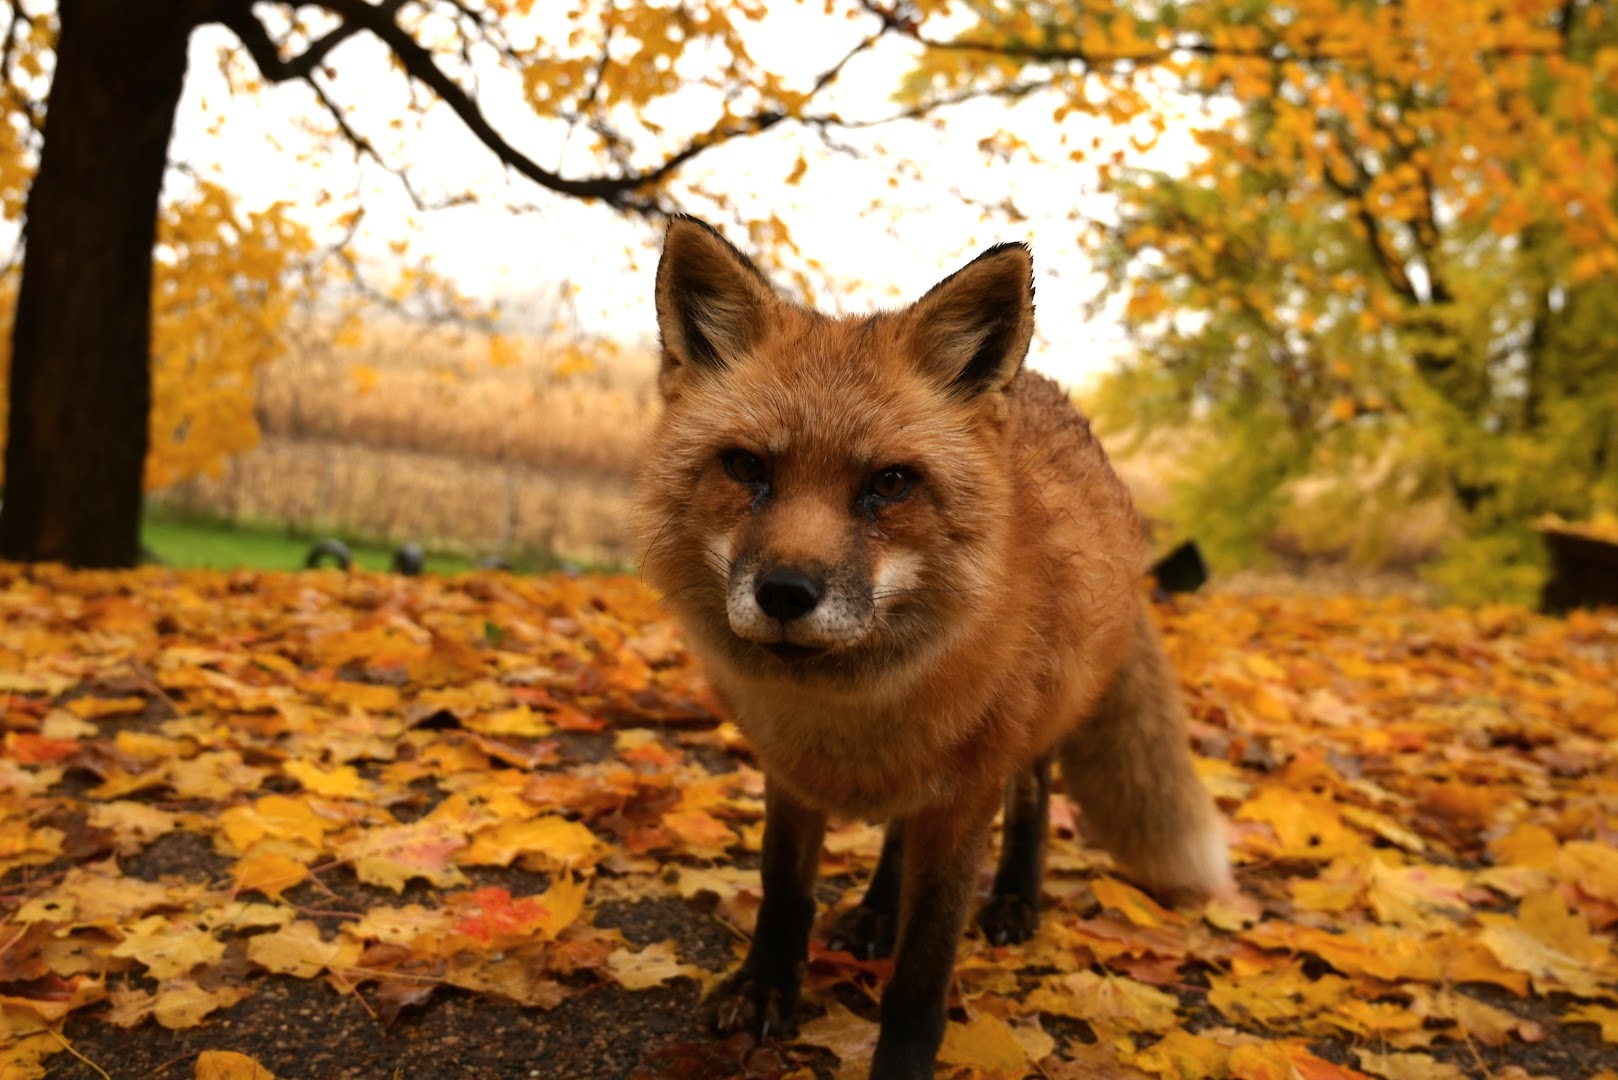 Save a Fox rescue